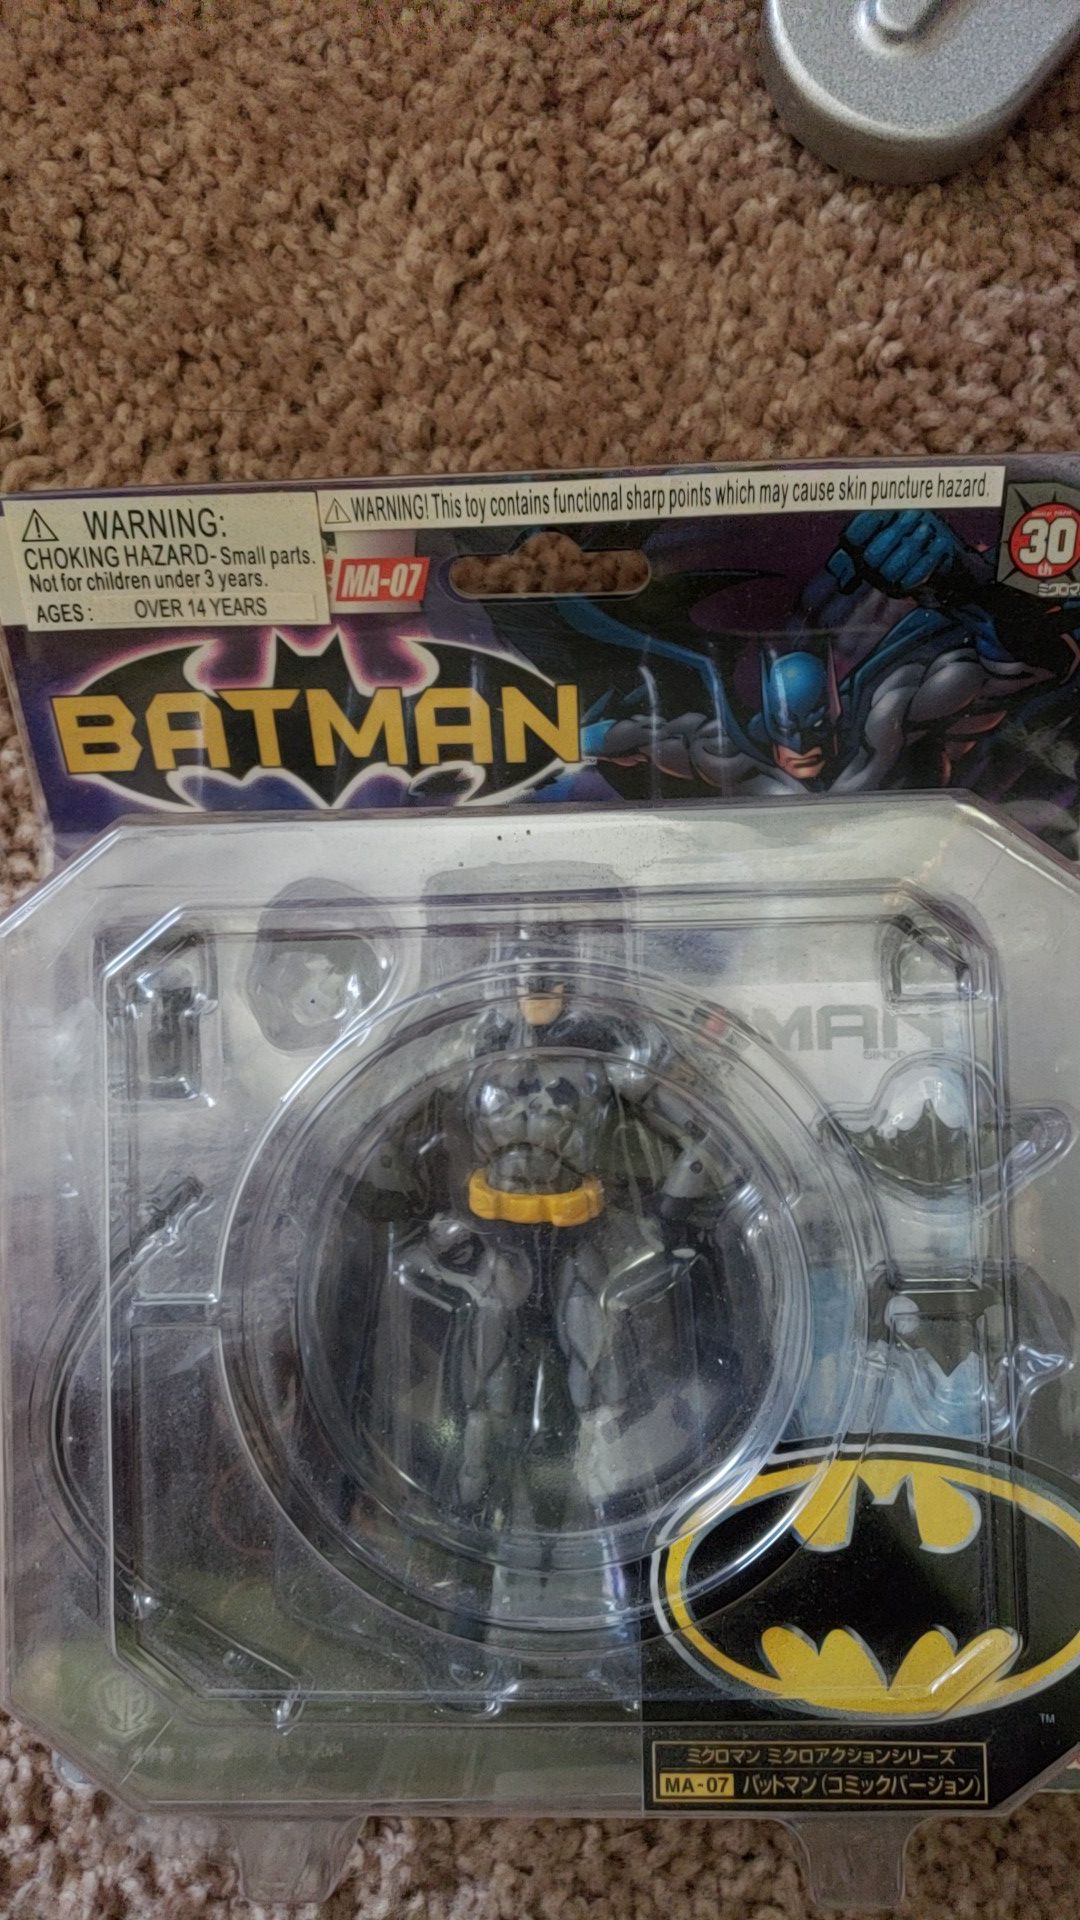 Batman collectable ($Negotiable)